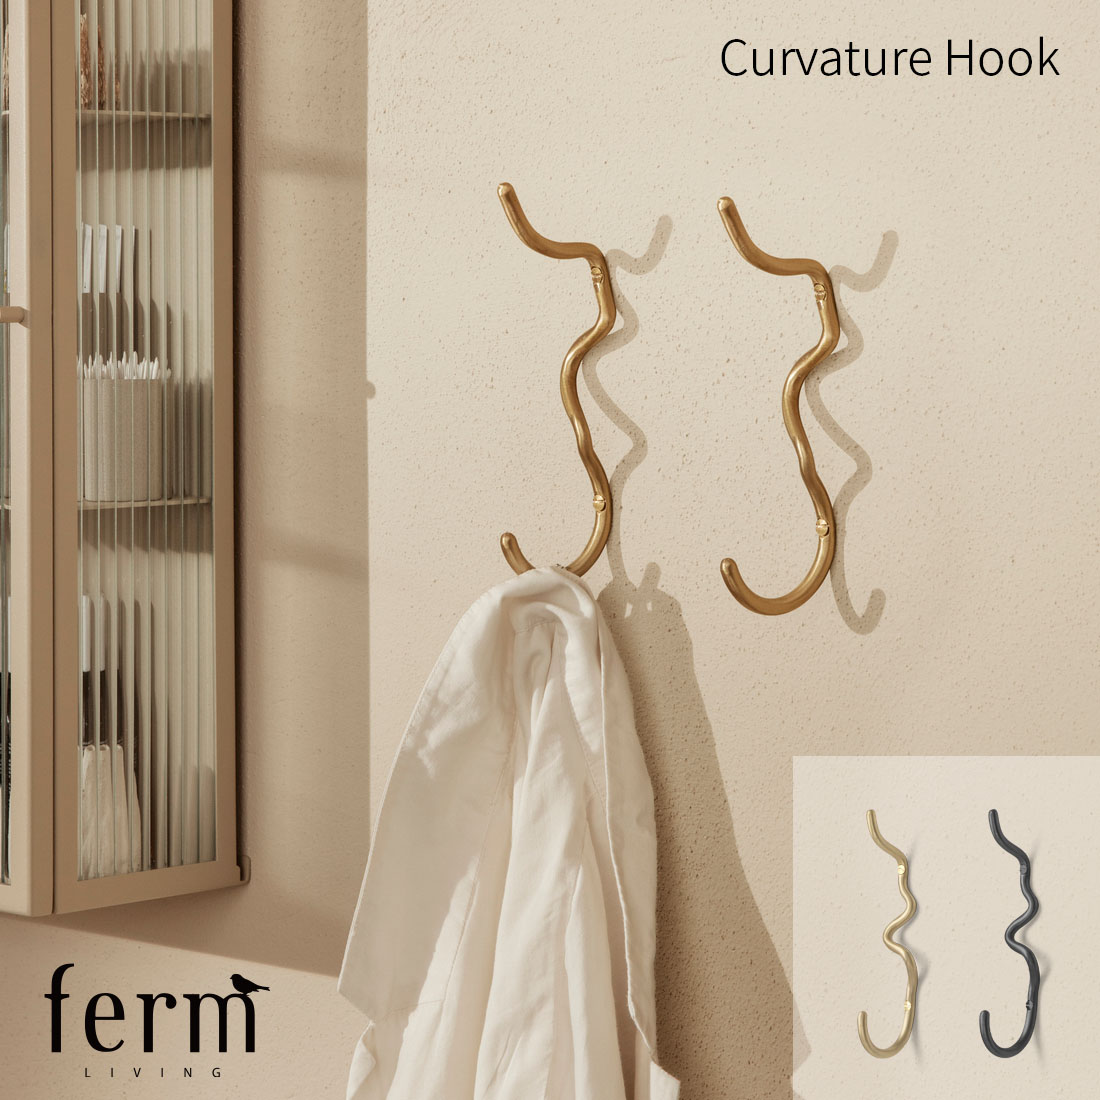 ferm LIVING ファームリビング Curvature Hook カーバチュア フック 北欧 インテリア 収納 壁掛け コートハンガー タオル